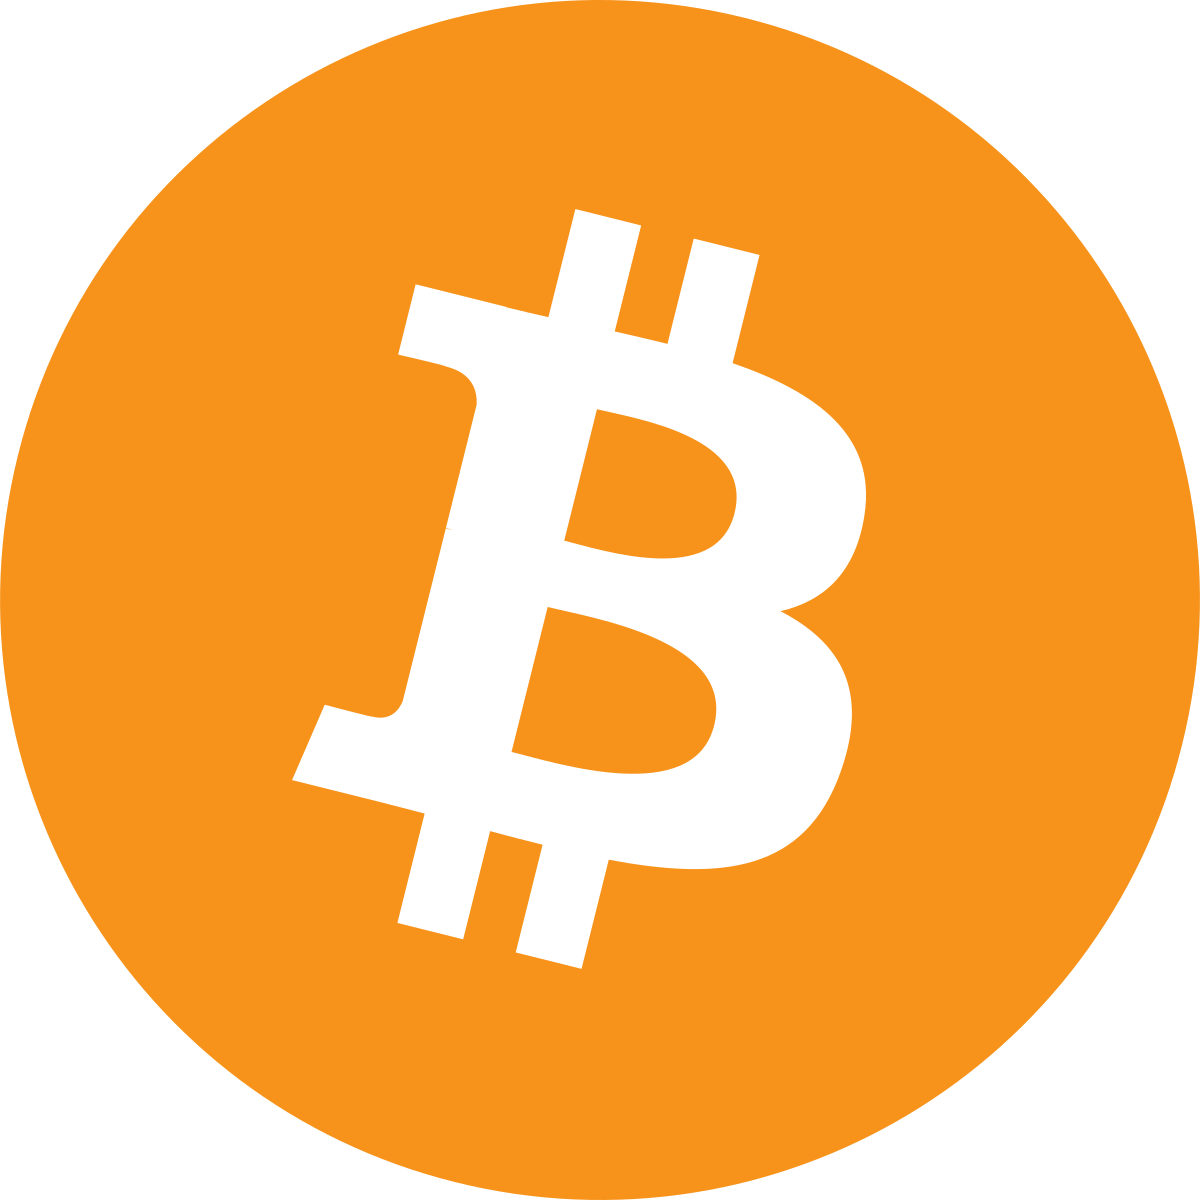 Bitcoin: Sebuah Sistem Uang Tunai Elektronik
Peer-to-Peer